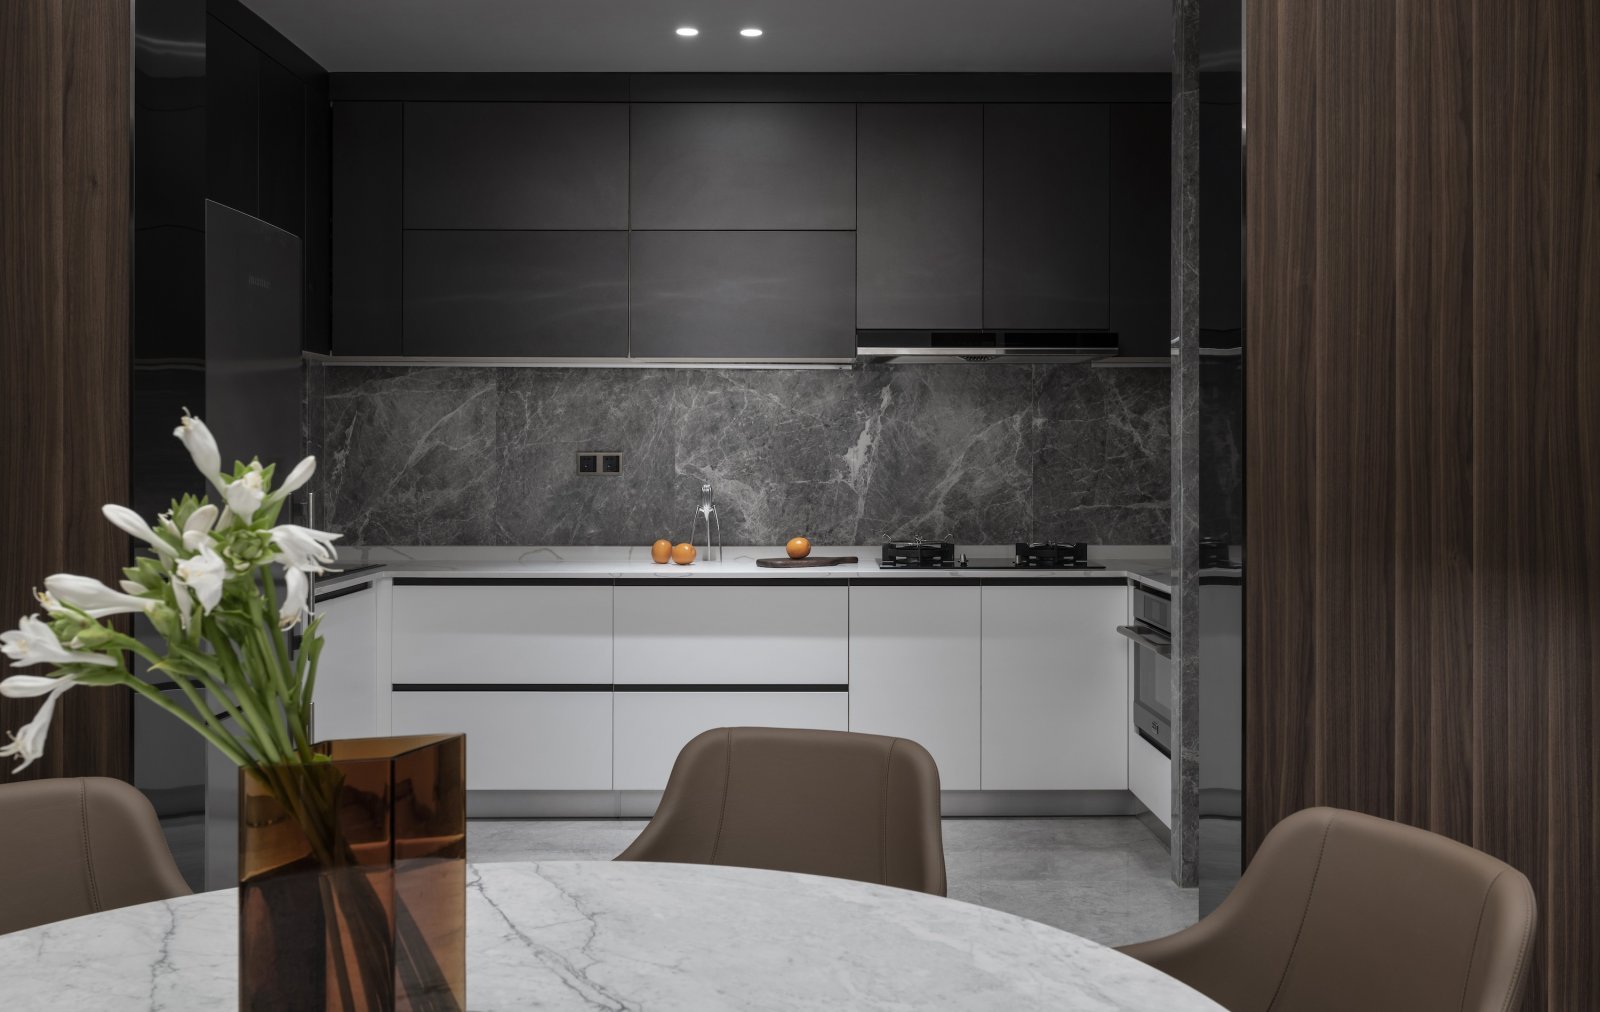 设计师将厨房设计为开放式厨房，灰白配色令空间处于安静而沉稳的氛围中。